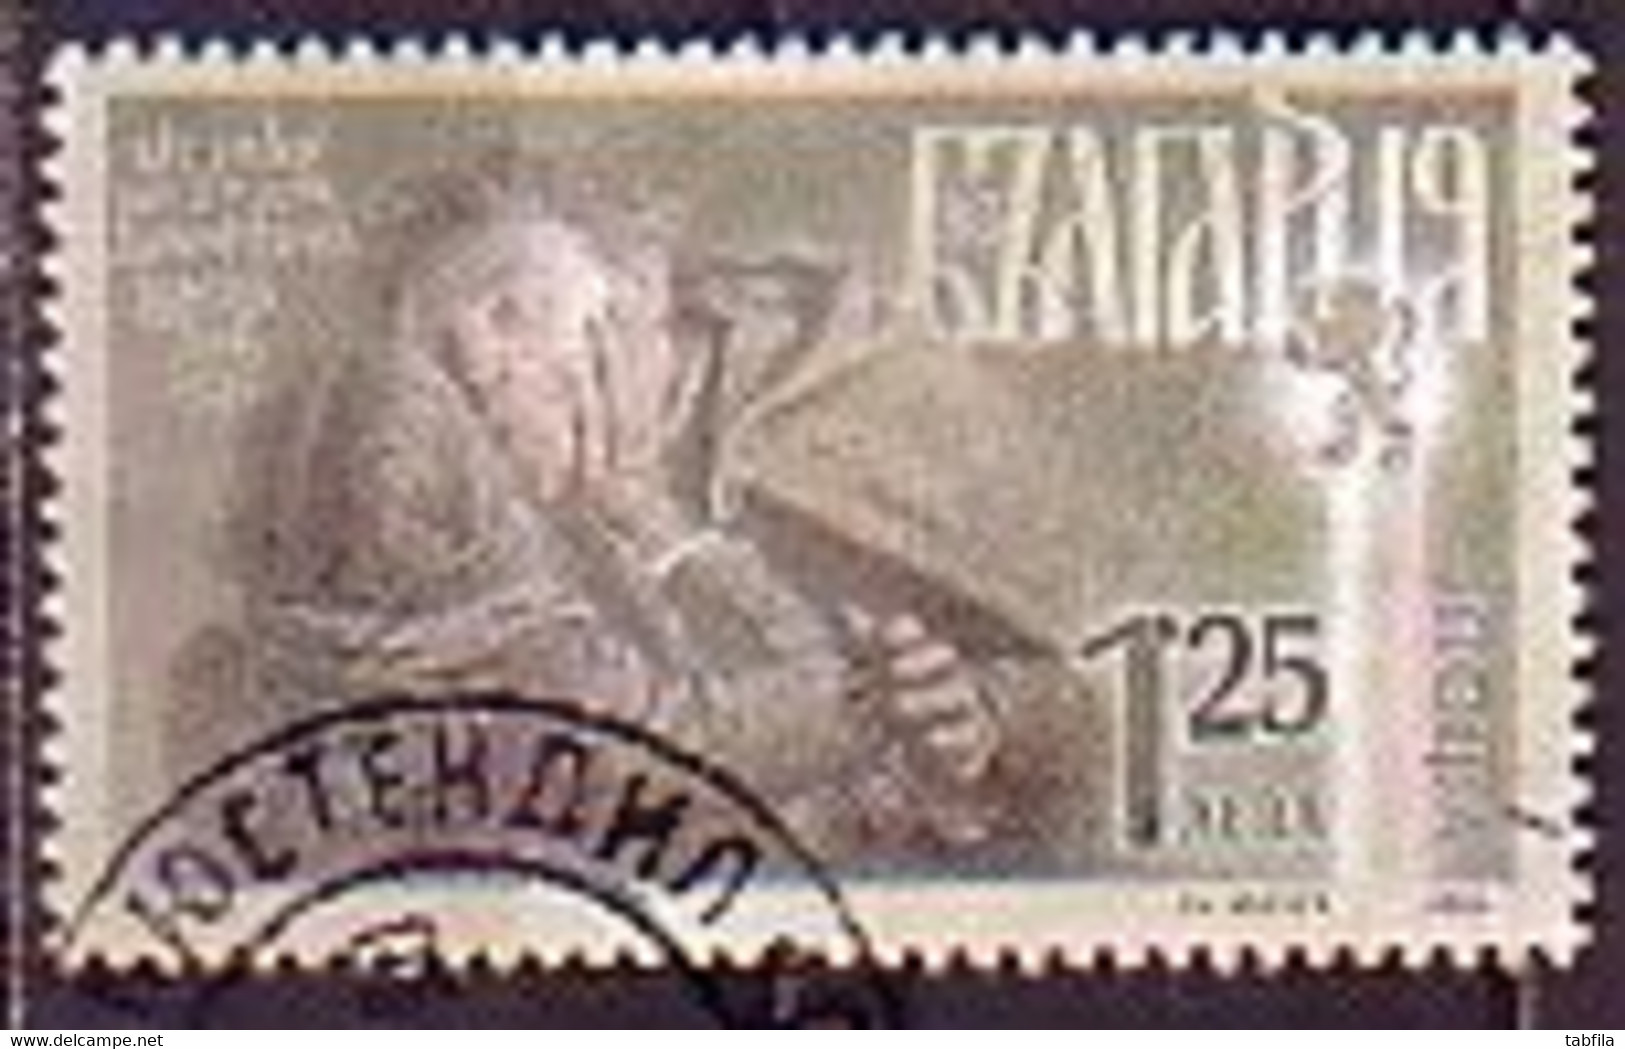 BULGARIA - 2022 - Vasil Levski - 1v (O) - Used Stamps